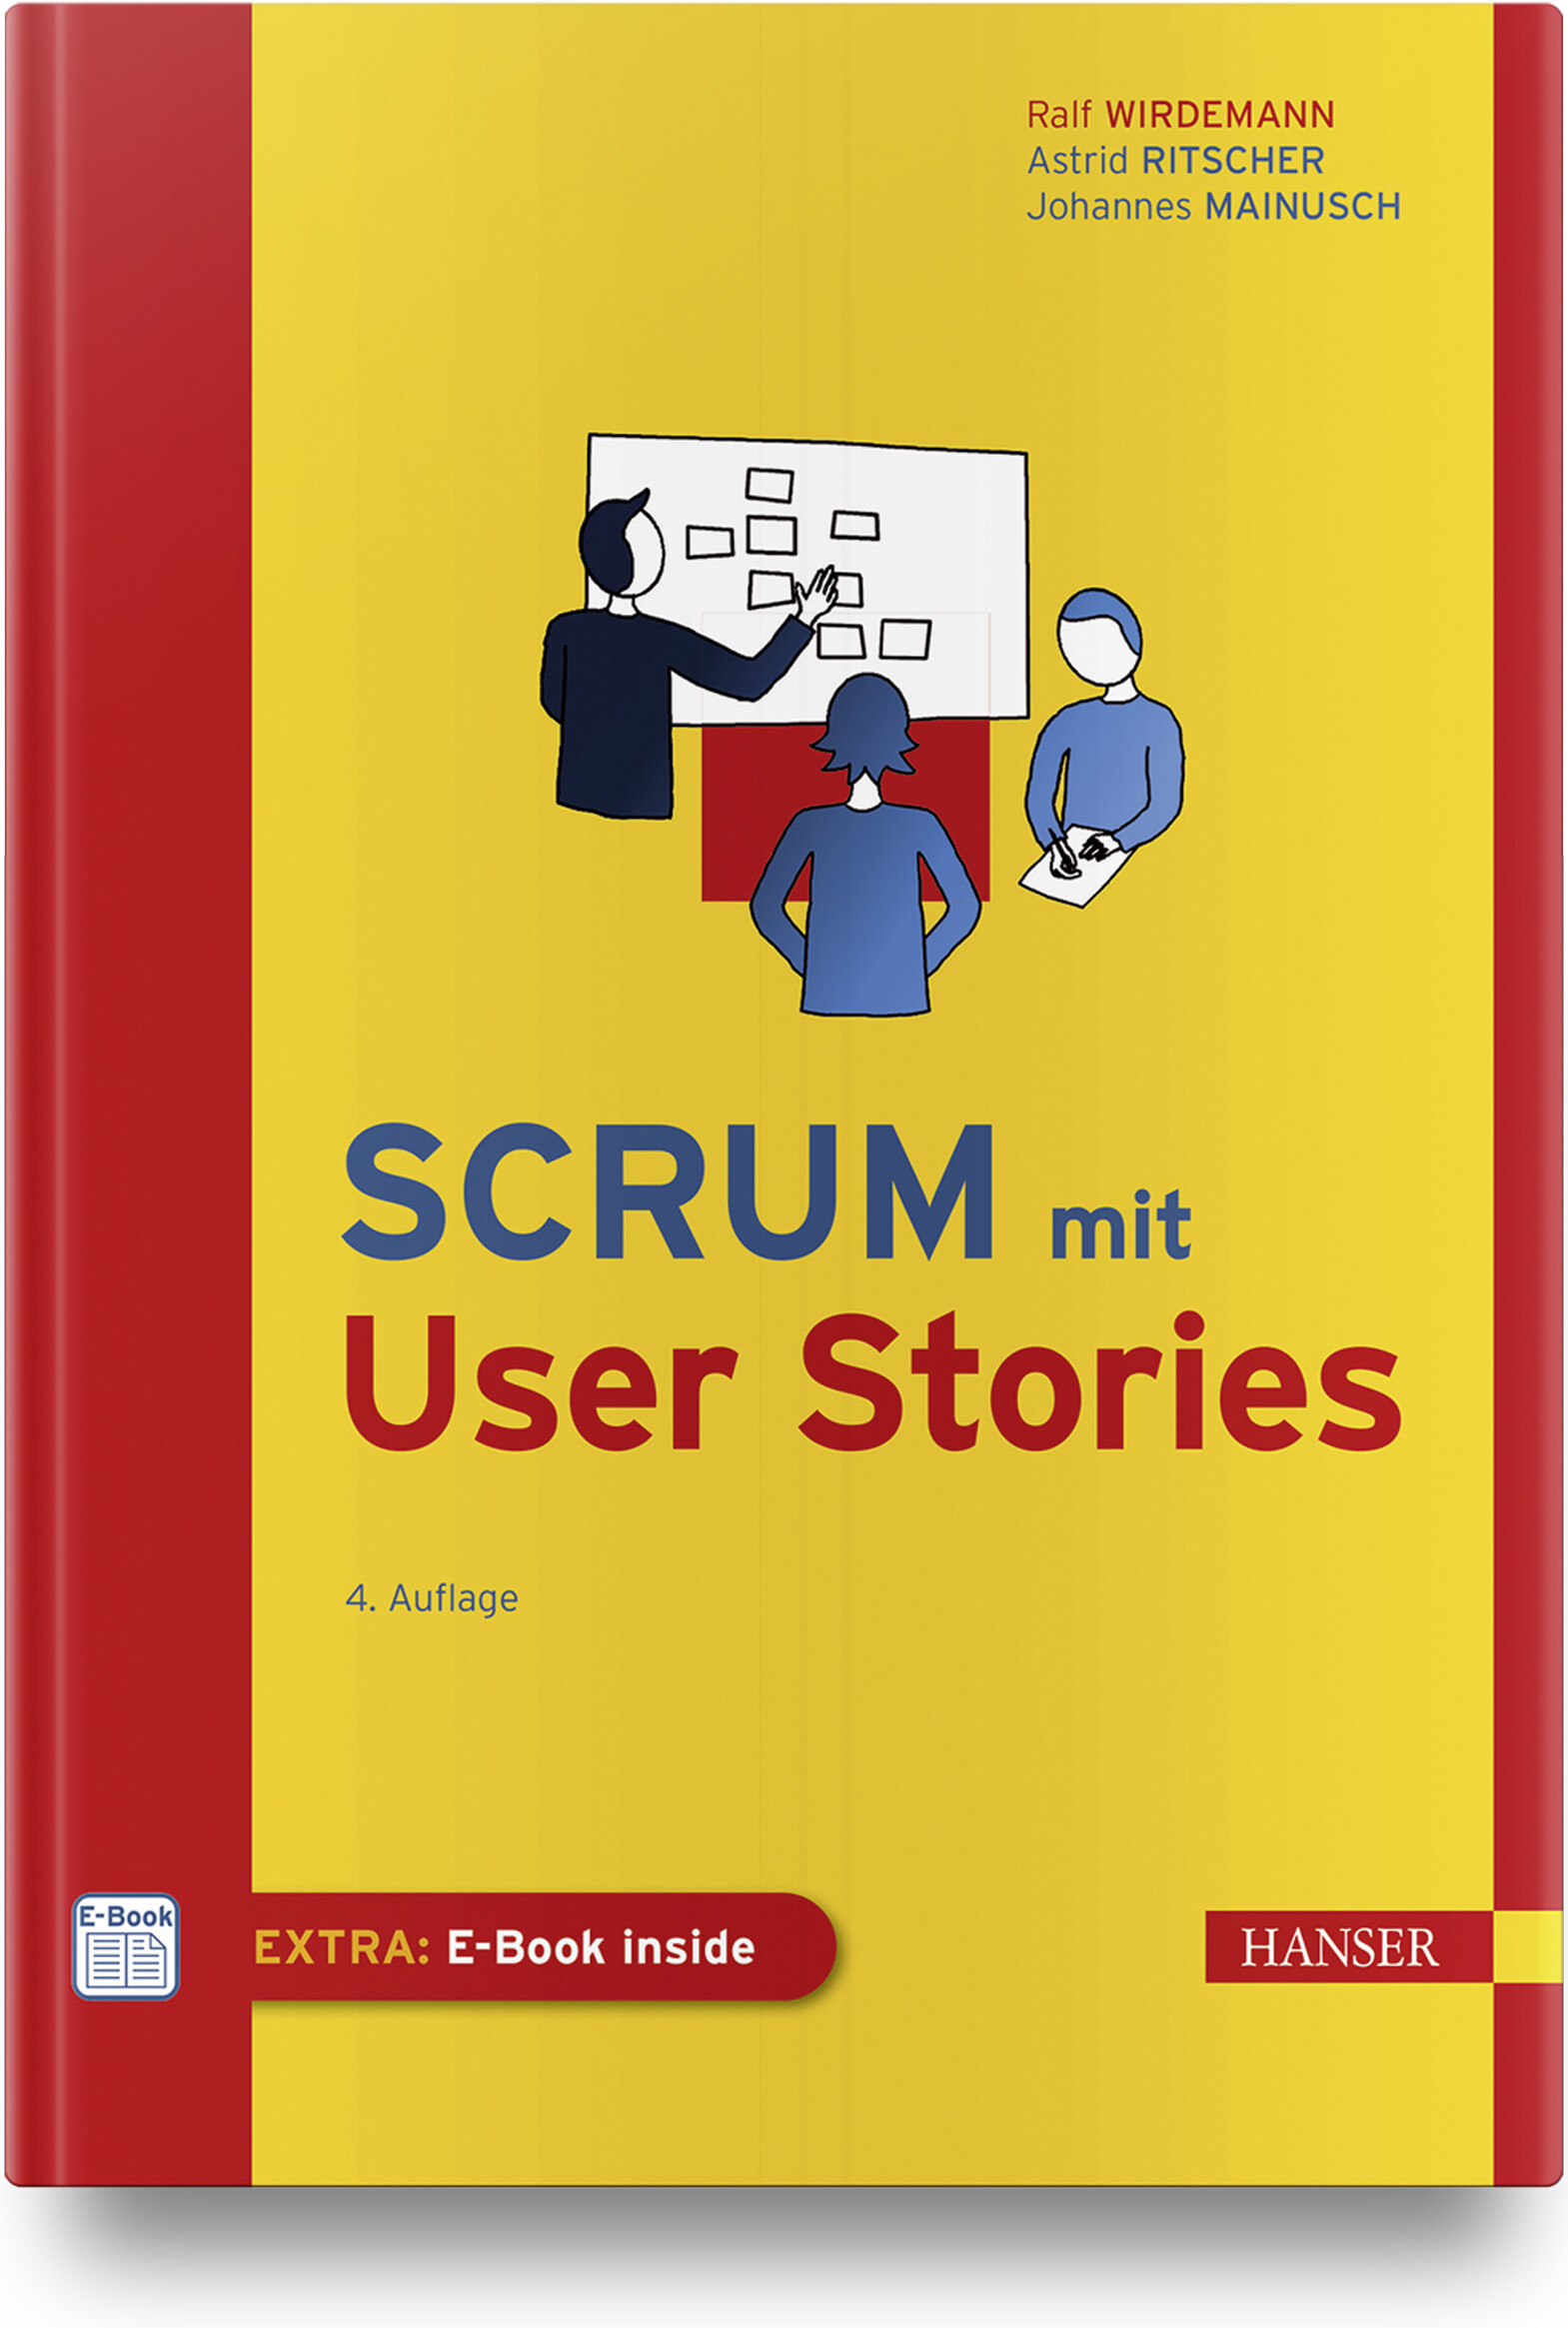 Scrum mit User Stories (4. Auflage)